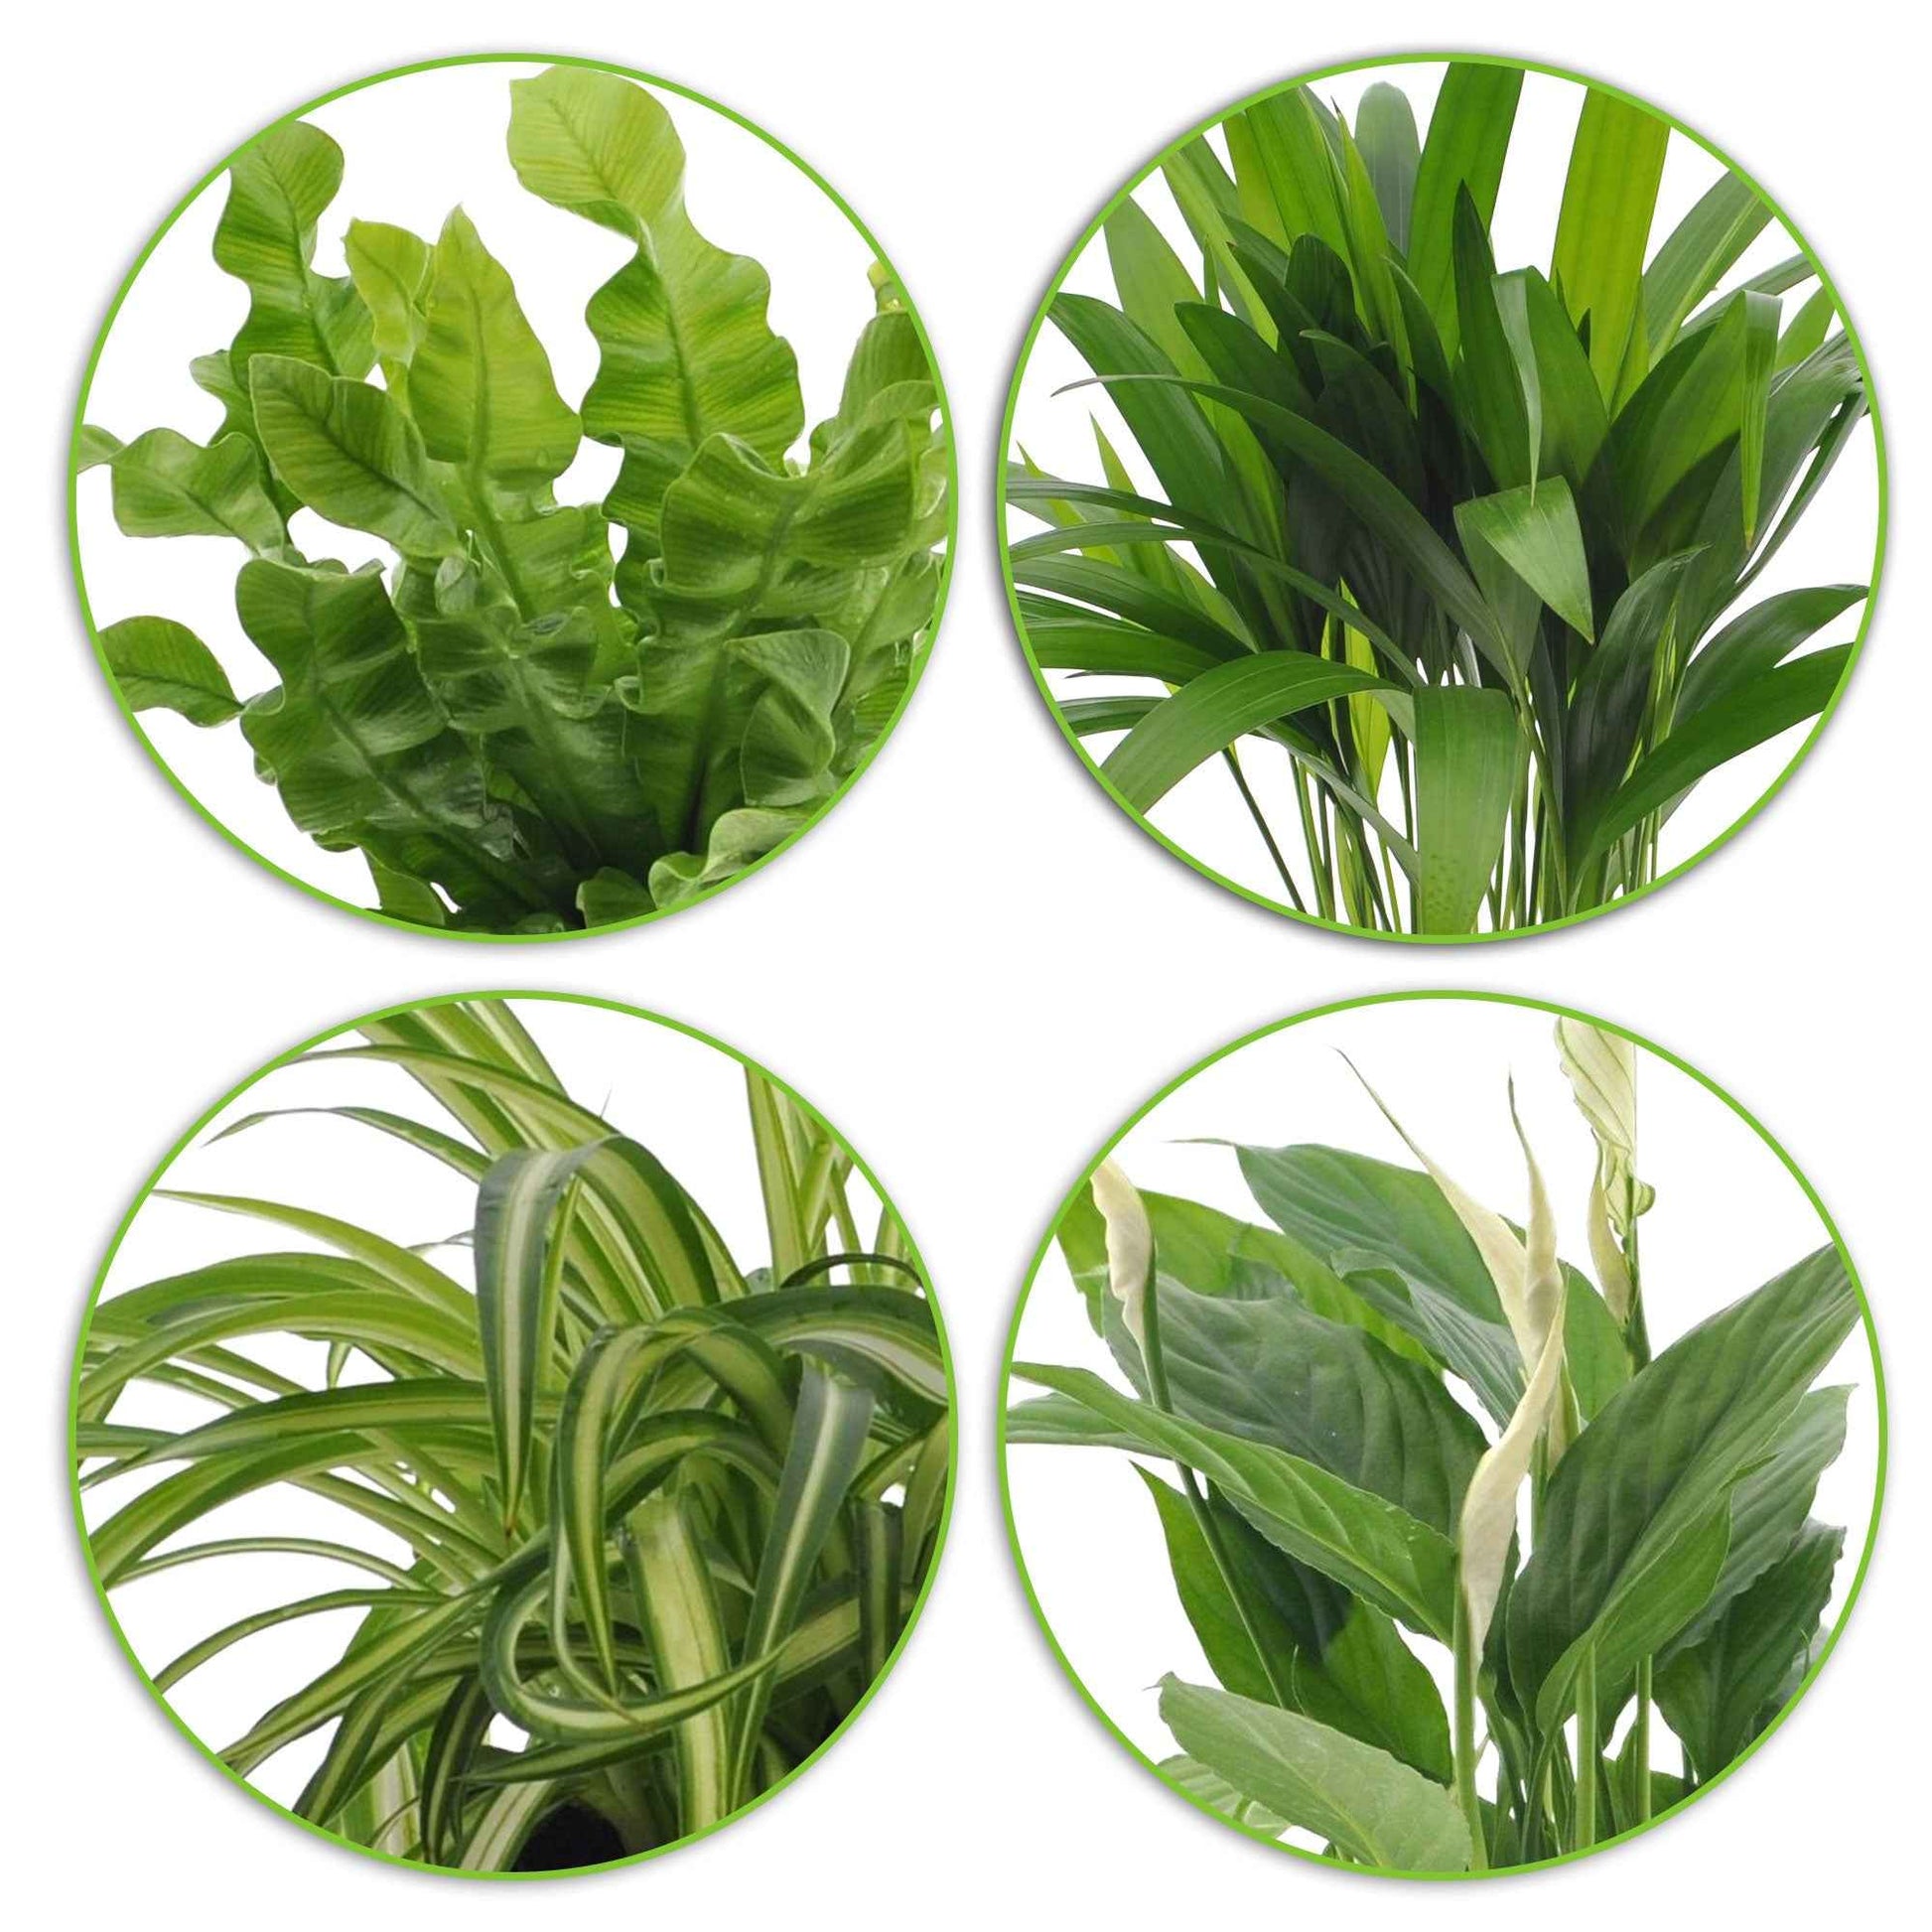 Luftreinigende Pflanzen Mischung inkl. Ziertöpfe, weiß (x4) - Dypsis, Chlorophytum, Asplenium, Spathiphyllum - Grünlilie – Chlorophytum